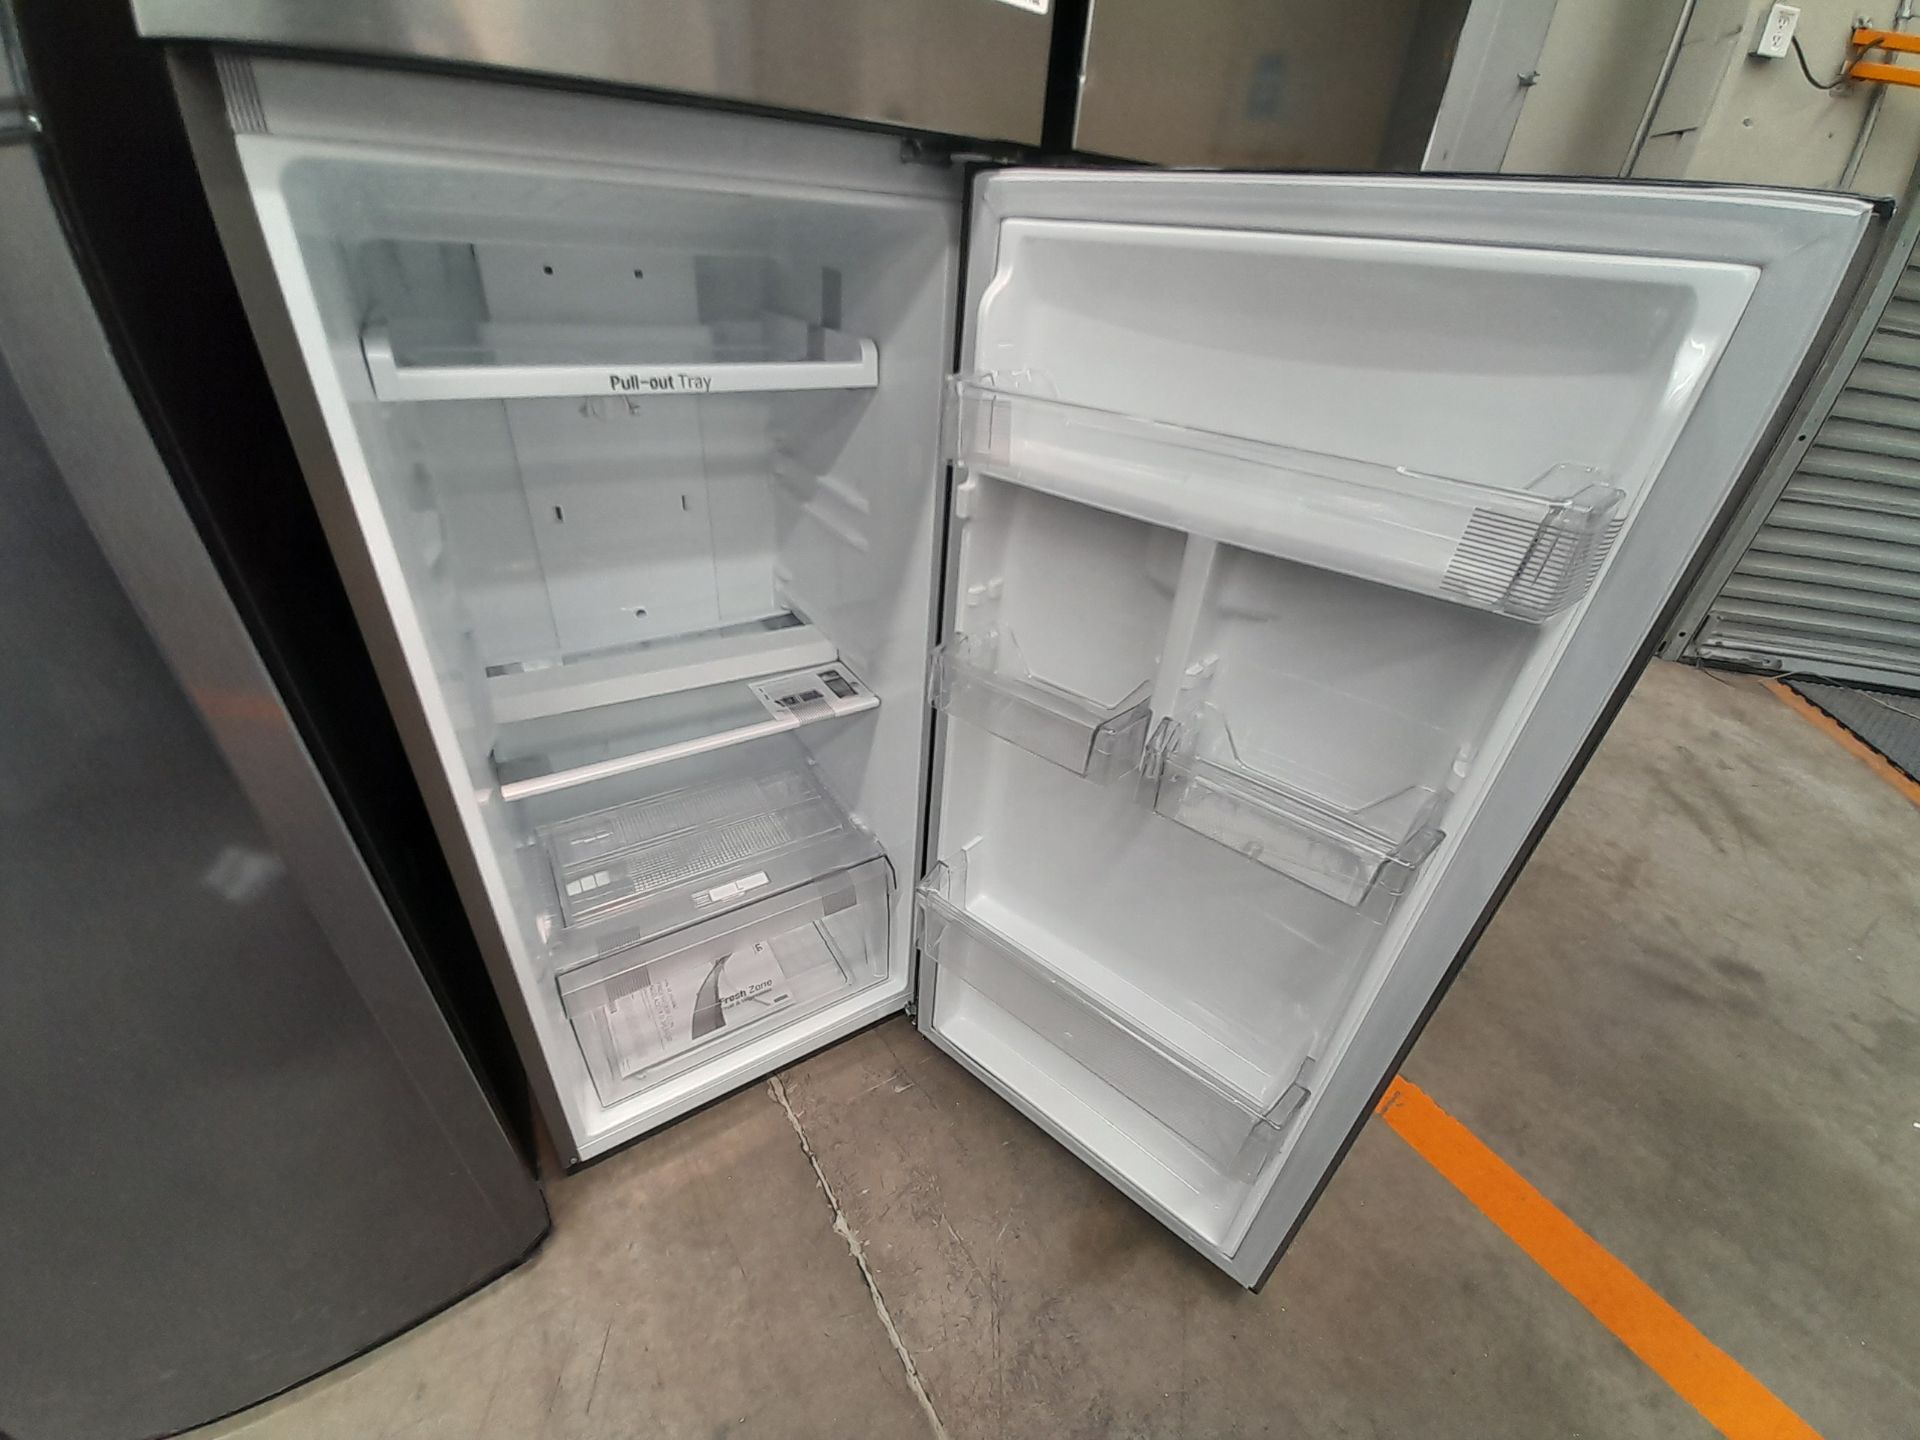 Lote de 2 refrigeradores contiene: 1 refrigerador Marca LG, Modelo GT29BPPK, Color GRIS; 1 refriger - Image 5 of 8